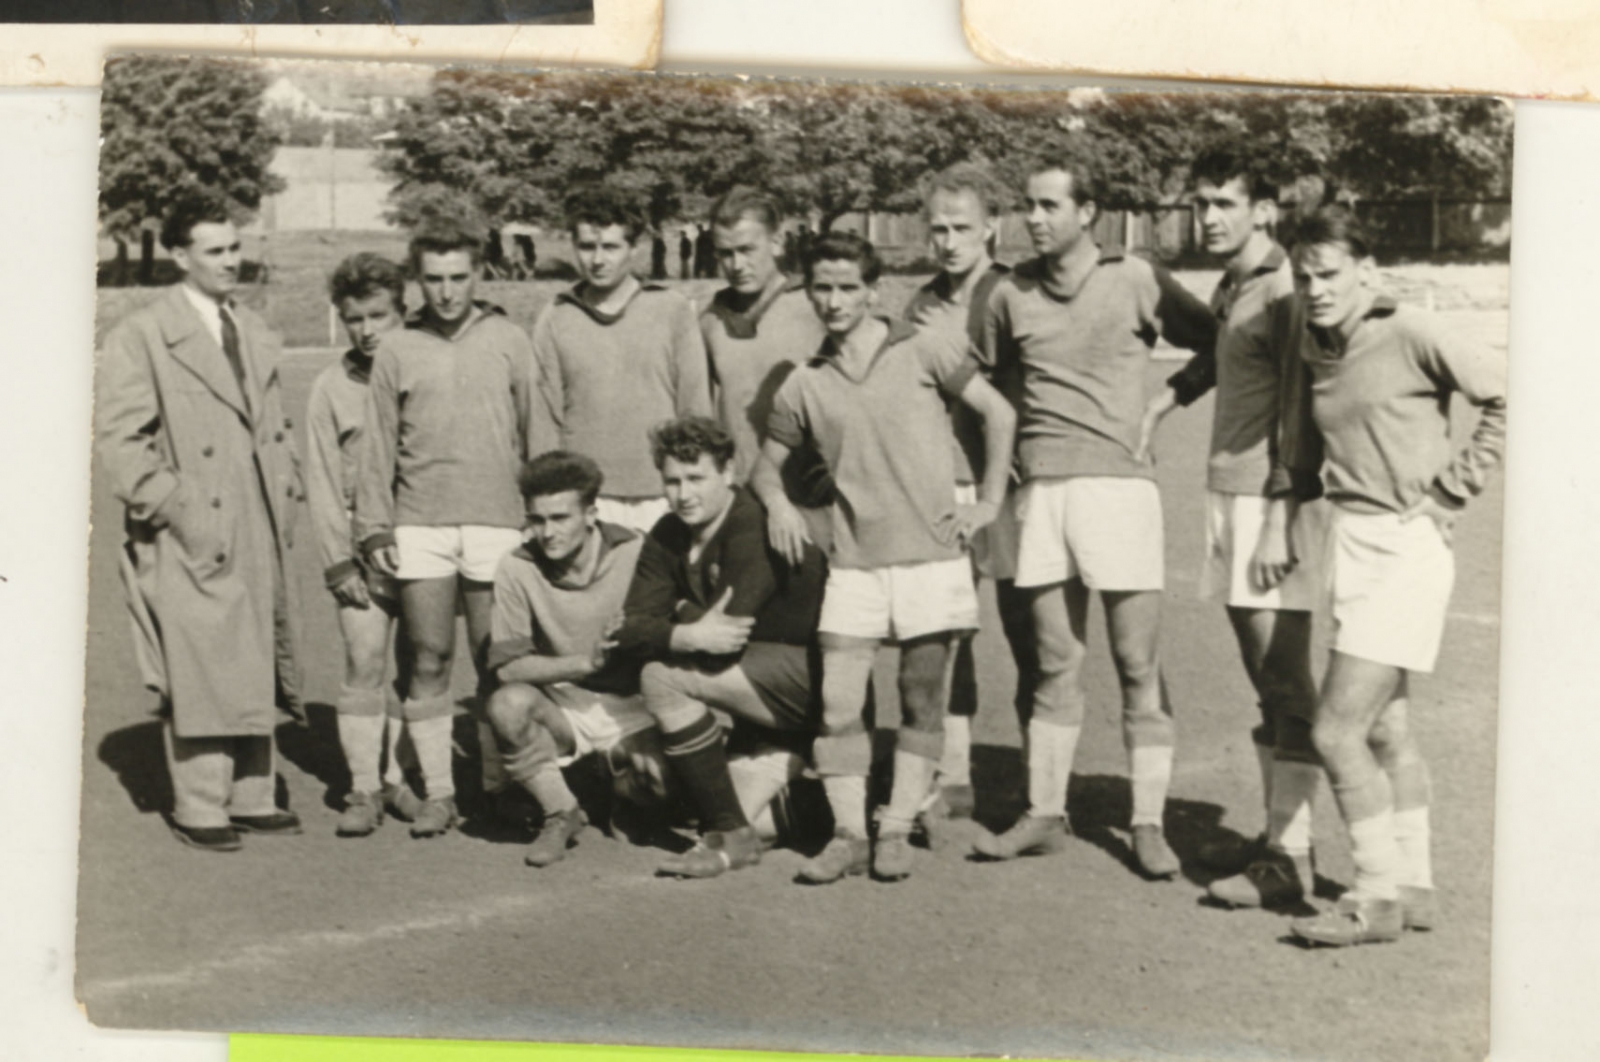 Az 1951-es pécsbányai labdarúgó csapat. Edző: Krivanek Vilmos. (A fényképért köszönet Hajek Jenőnének)